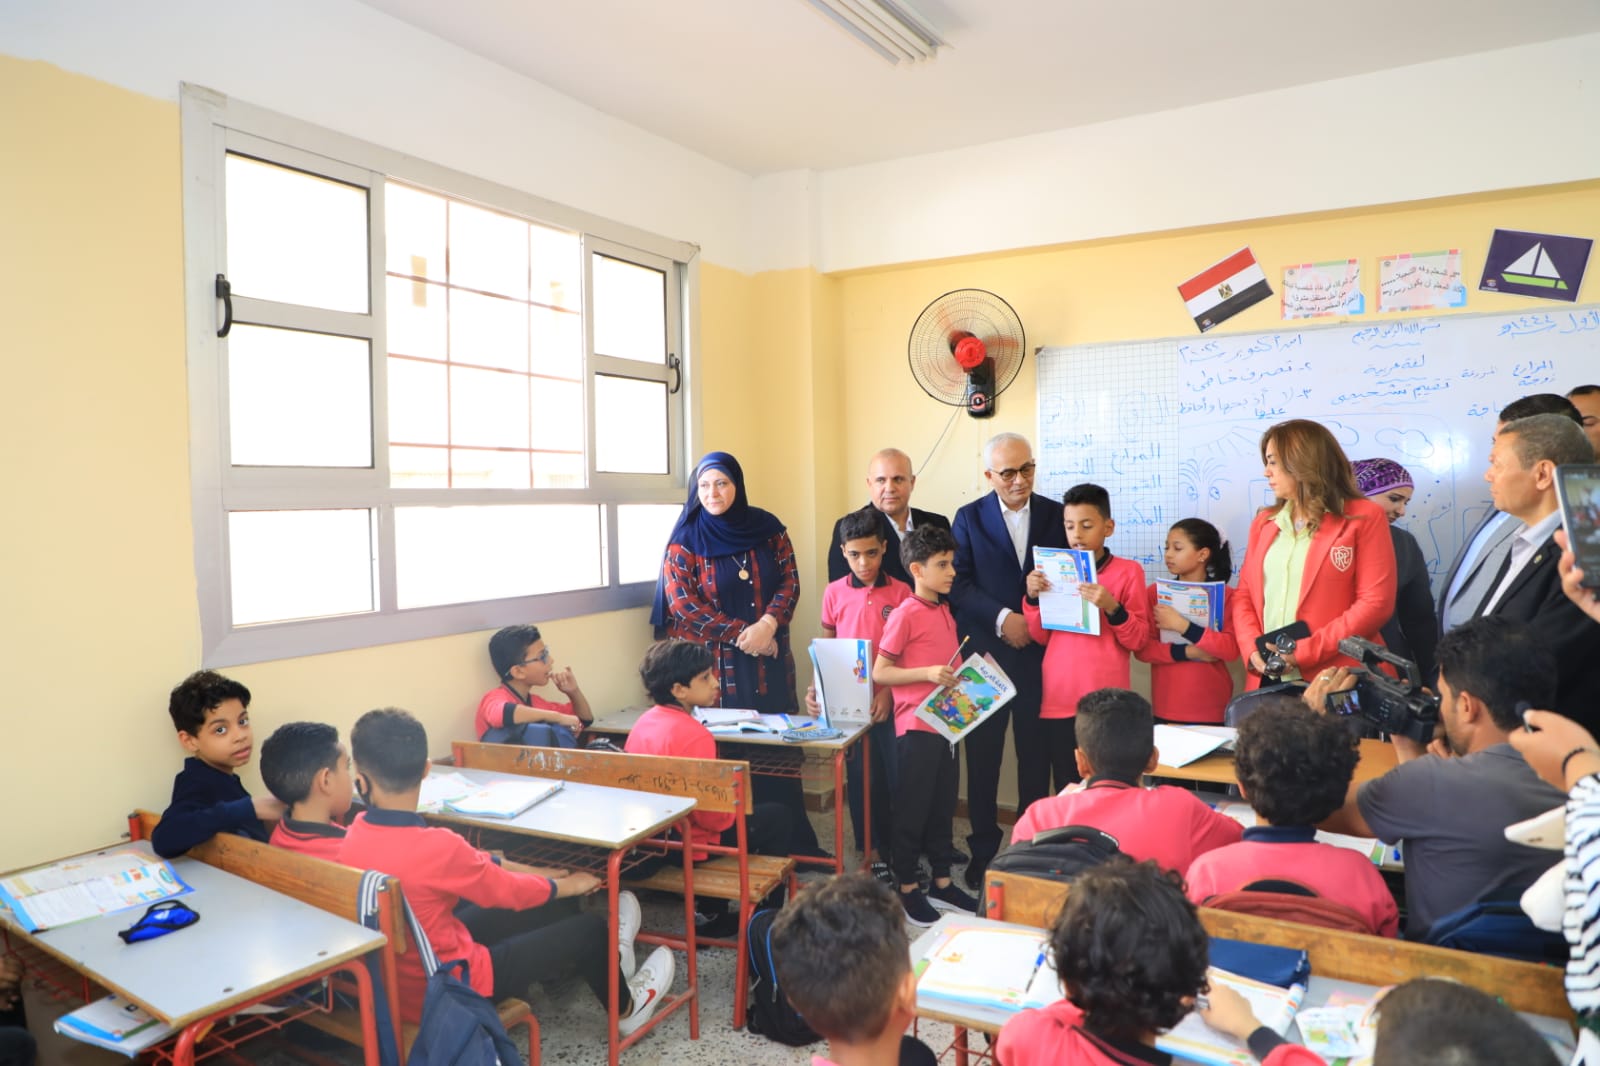 وزير التعليم يوجه طلاب مدرسة 6 أكتوبر في دمياط إلى صيغة الأعداد الصحيحة| فيديو وصور 